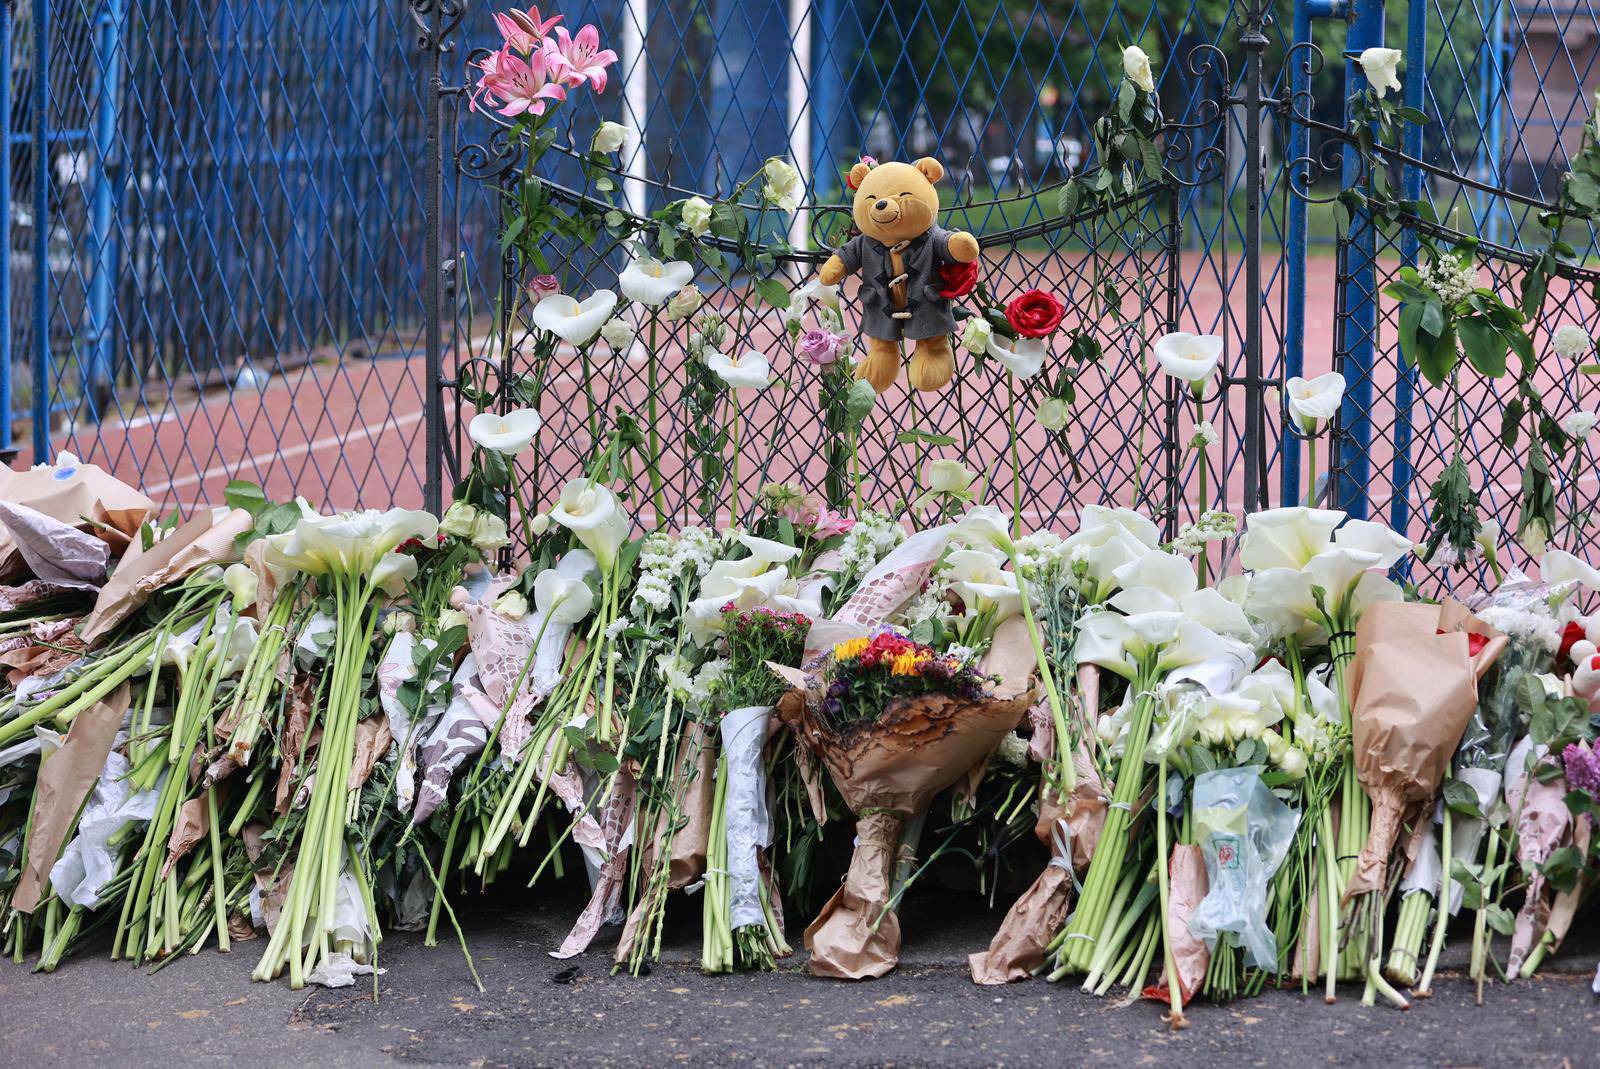 Beograd: Suze i zapaljene svijeće ispred škole gdje je ubijeno osam učenika i zaštitar